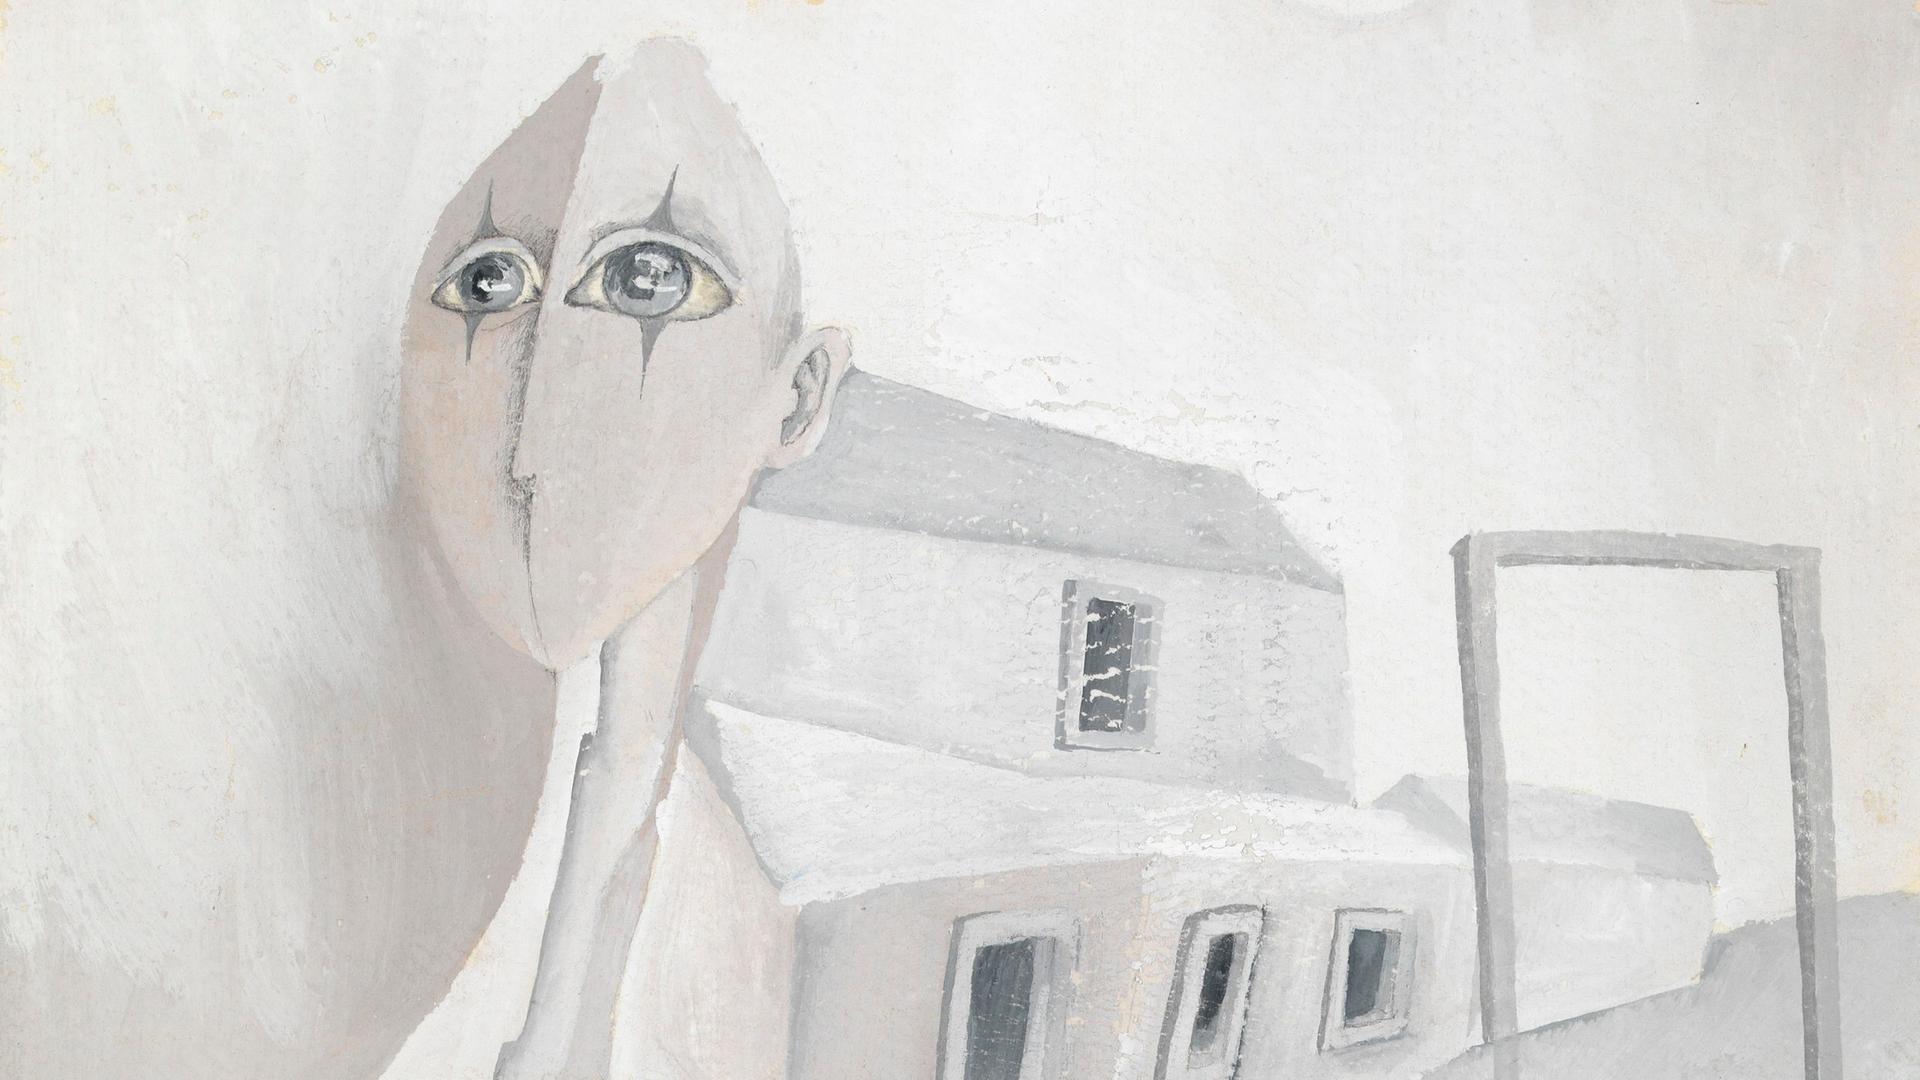 Auf dem surreal wirkenden Gemälde ist der Kopf eines glatzköpfigen weiblichen Harlekins zu sehen, der eine Häuserfront anführt.